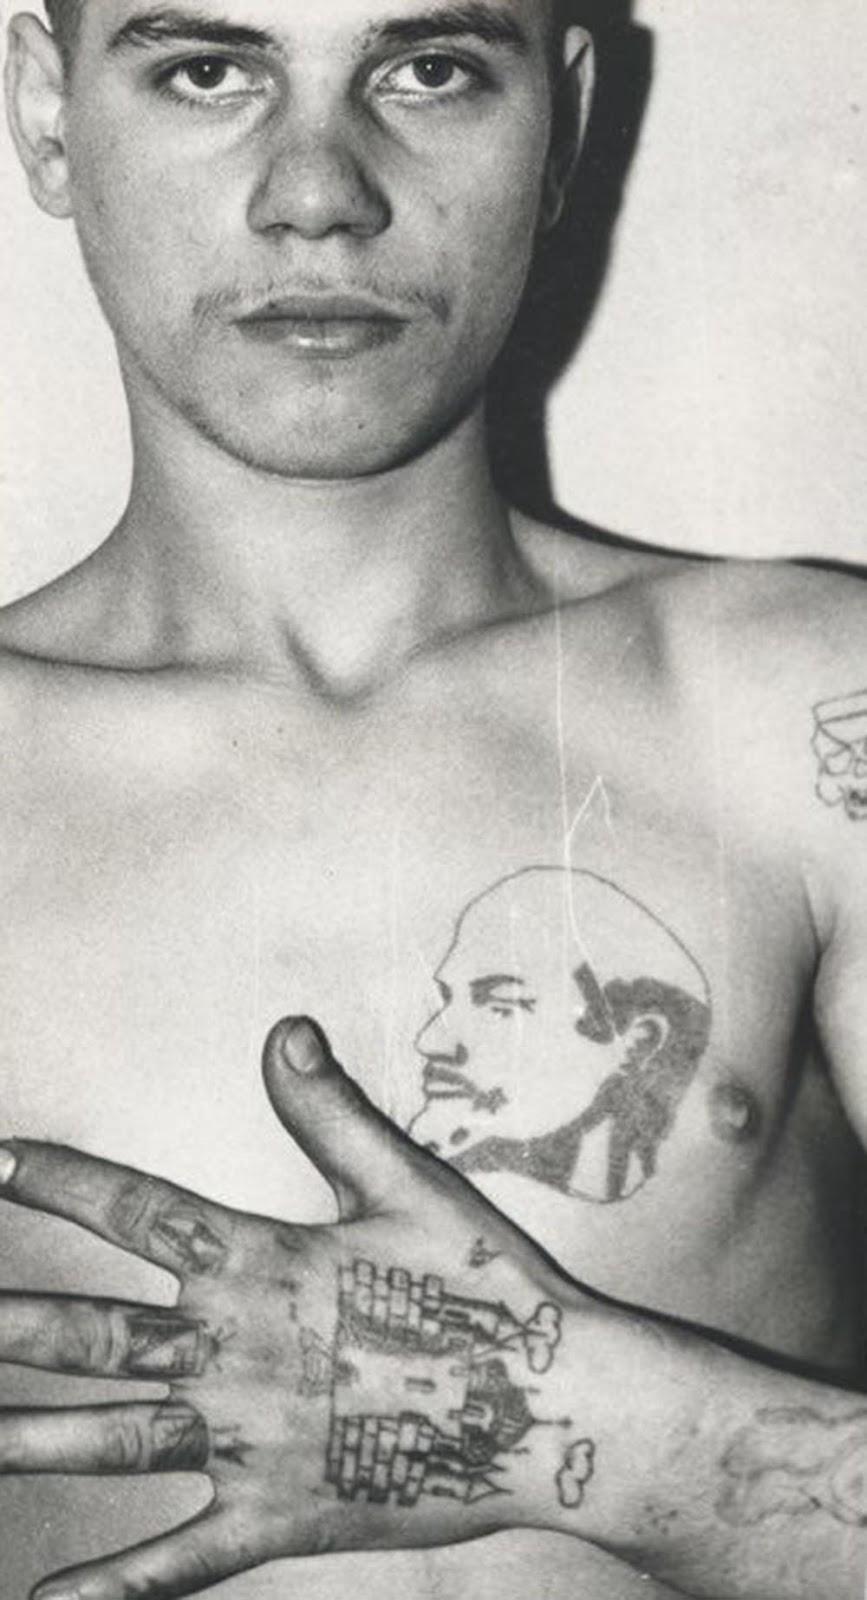 Le code mondial d'pénal russe tatouages, 1960-1990